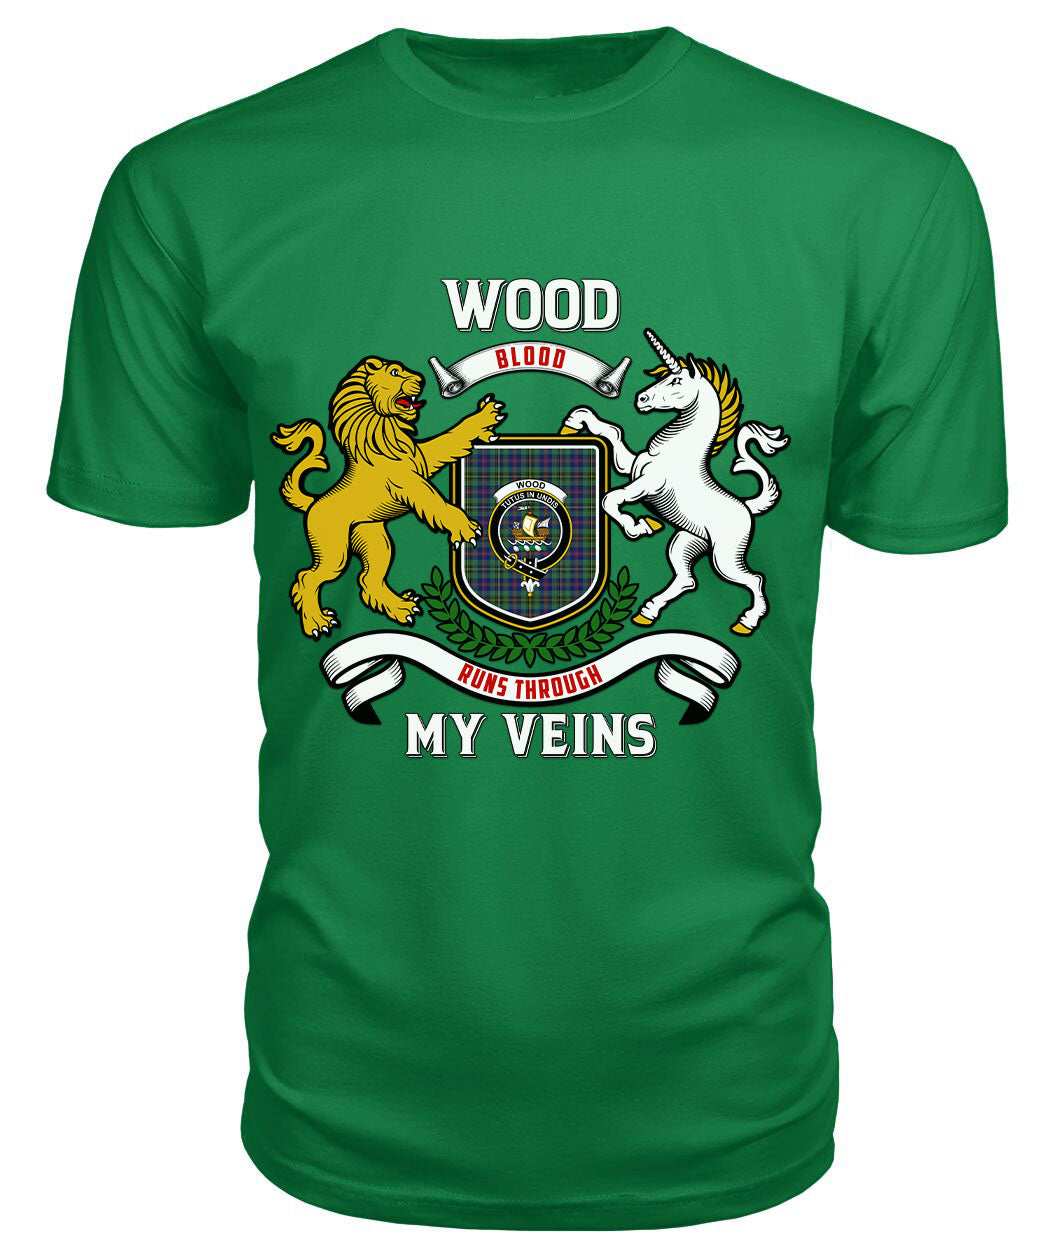 Wood Tartan Crest 2D T-shirt - Blood Runs Through My Veins Style